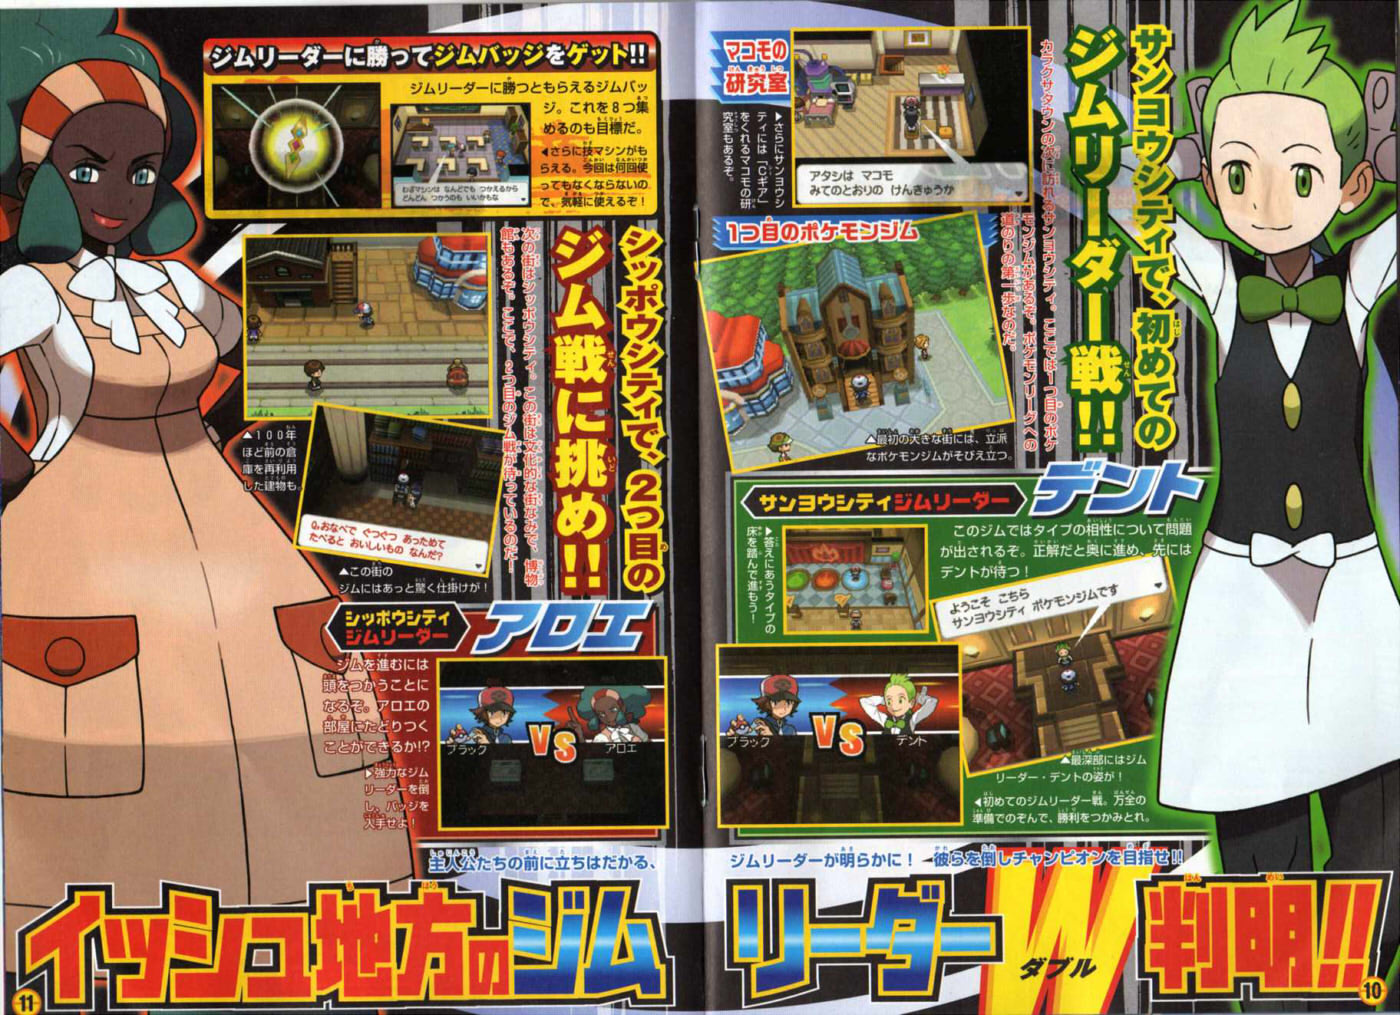 CoroCoro Magazine Shows the Pokédex and More for Pokémon Omega